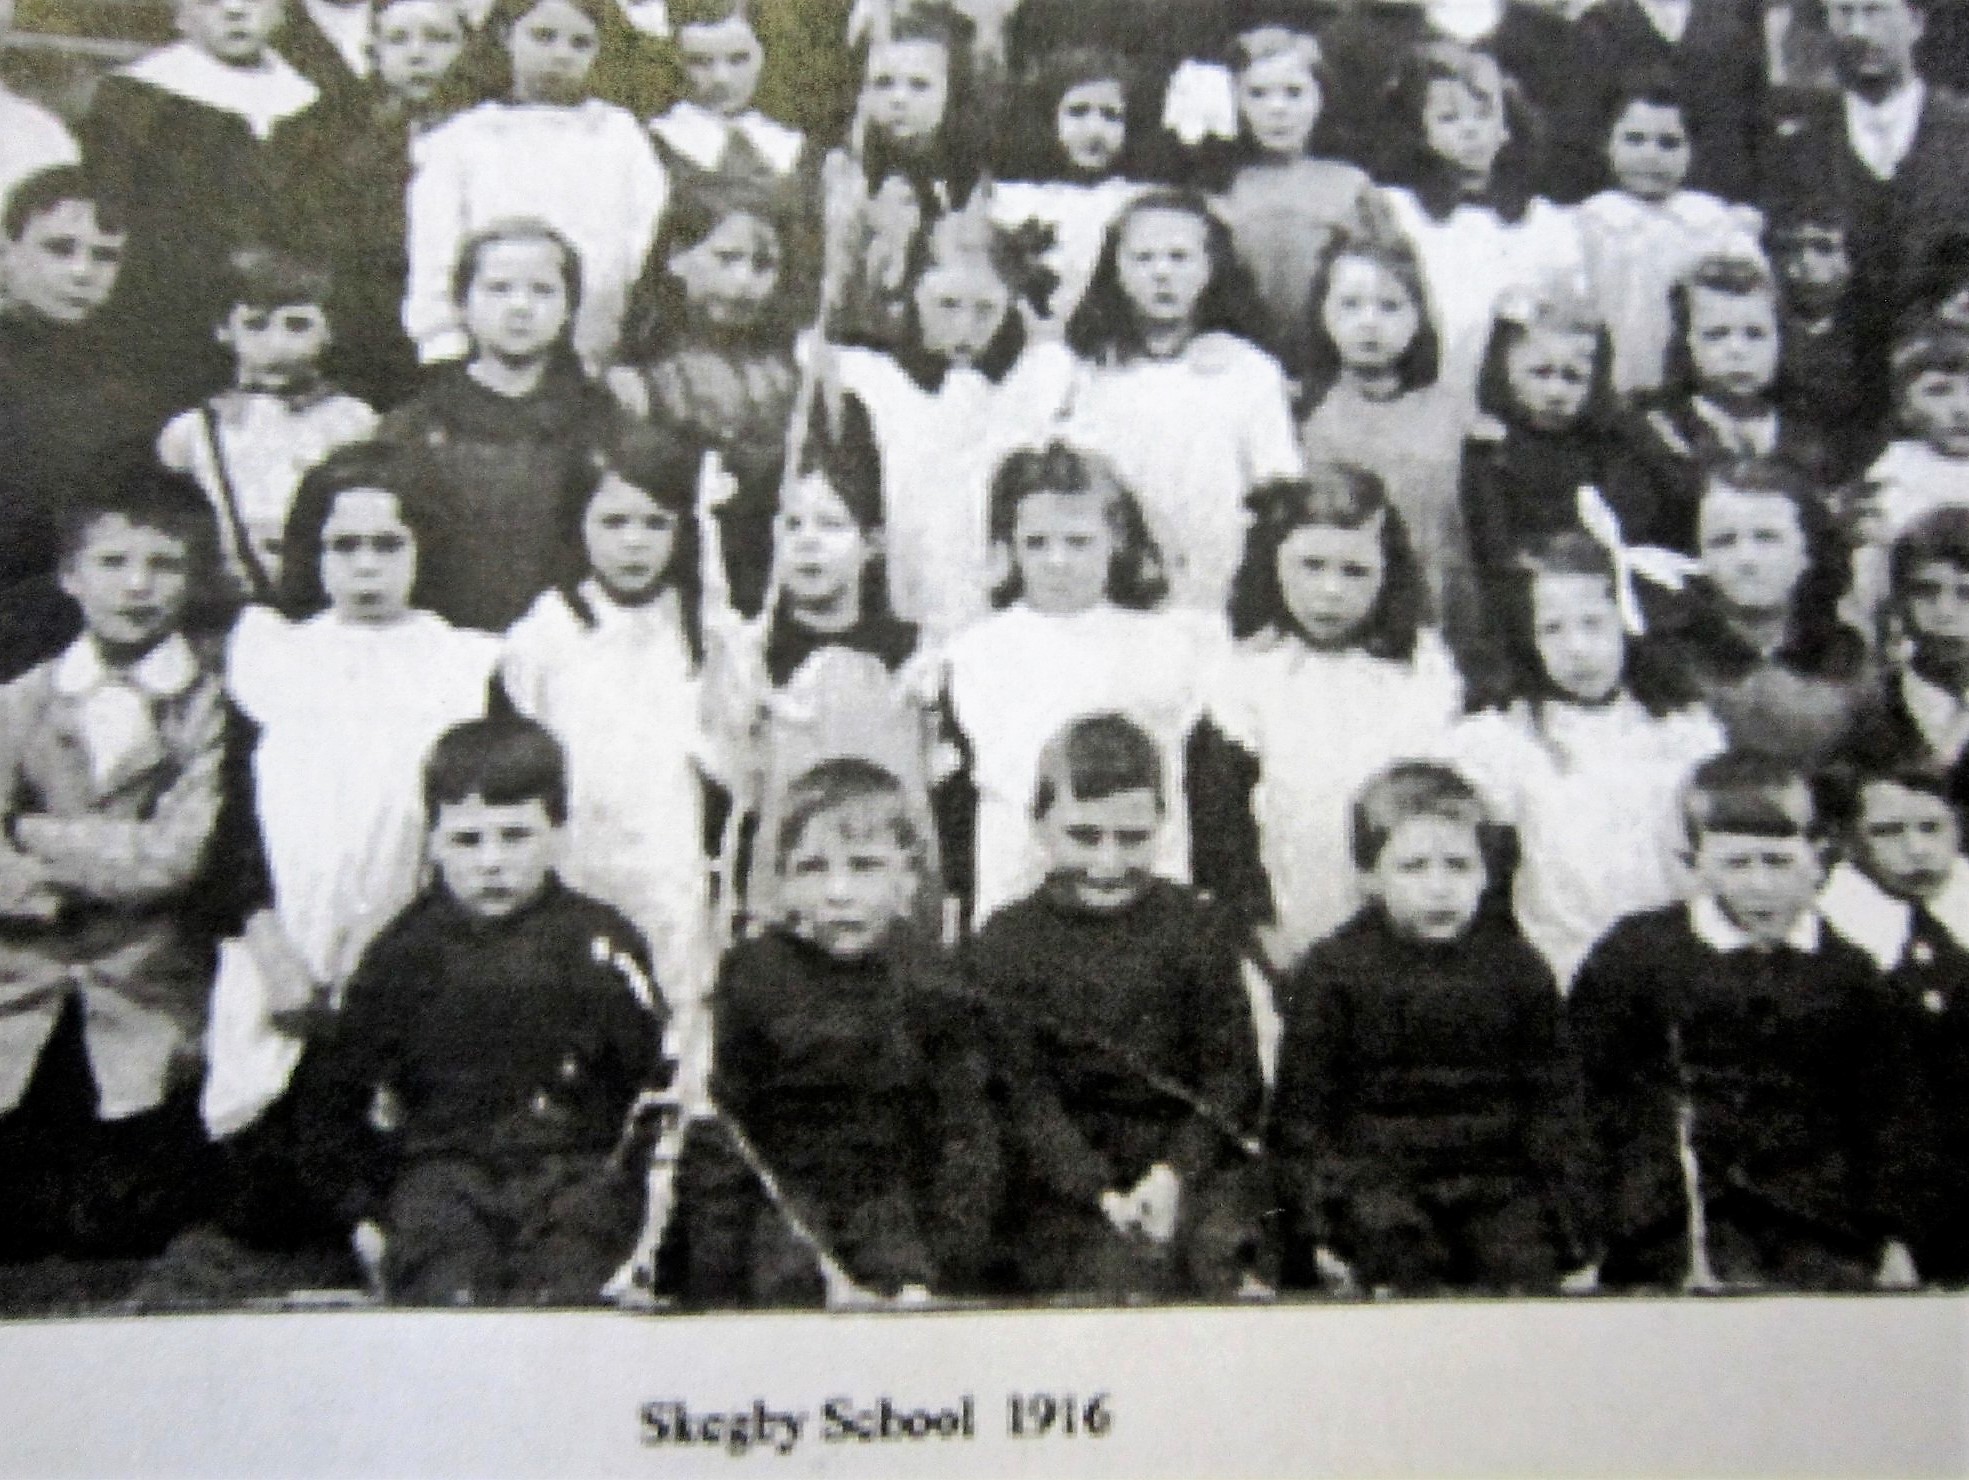 Skegby Primary School